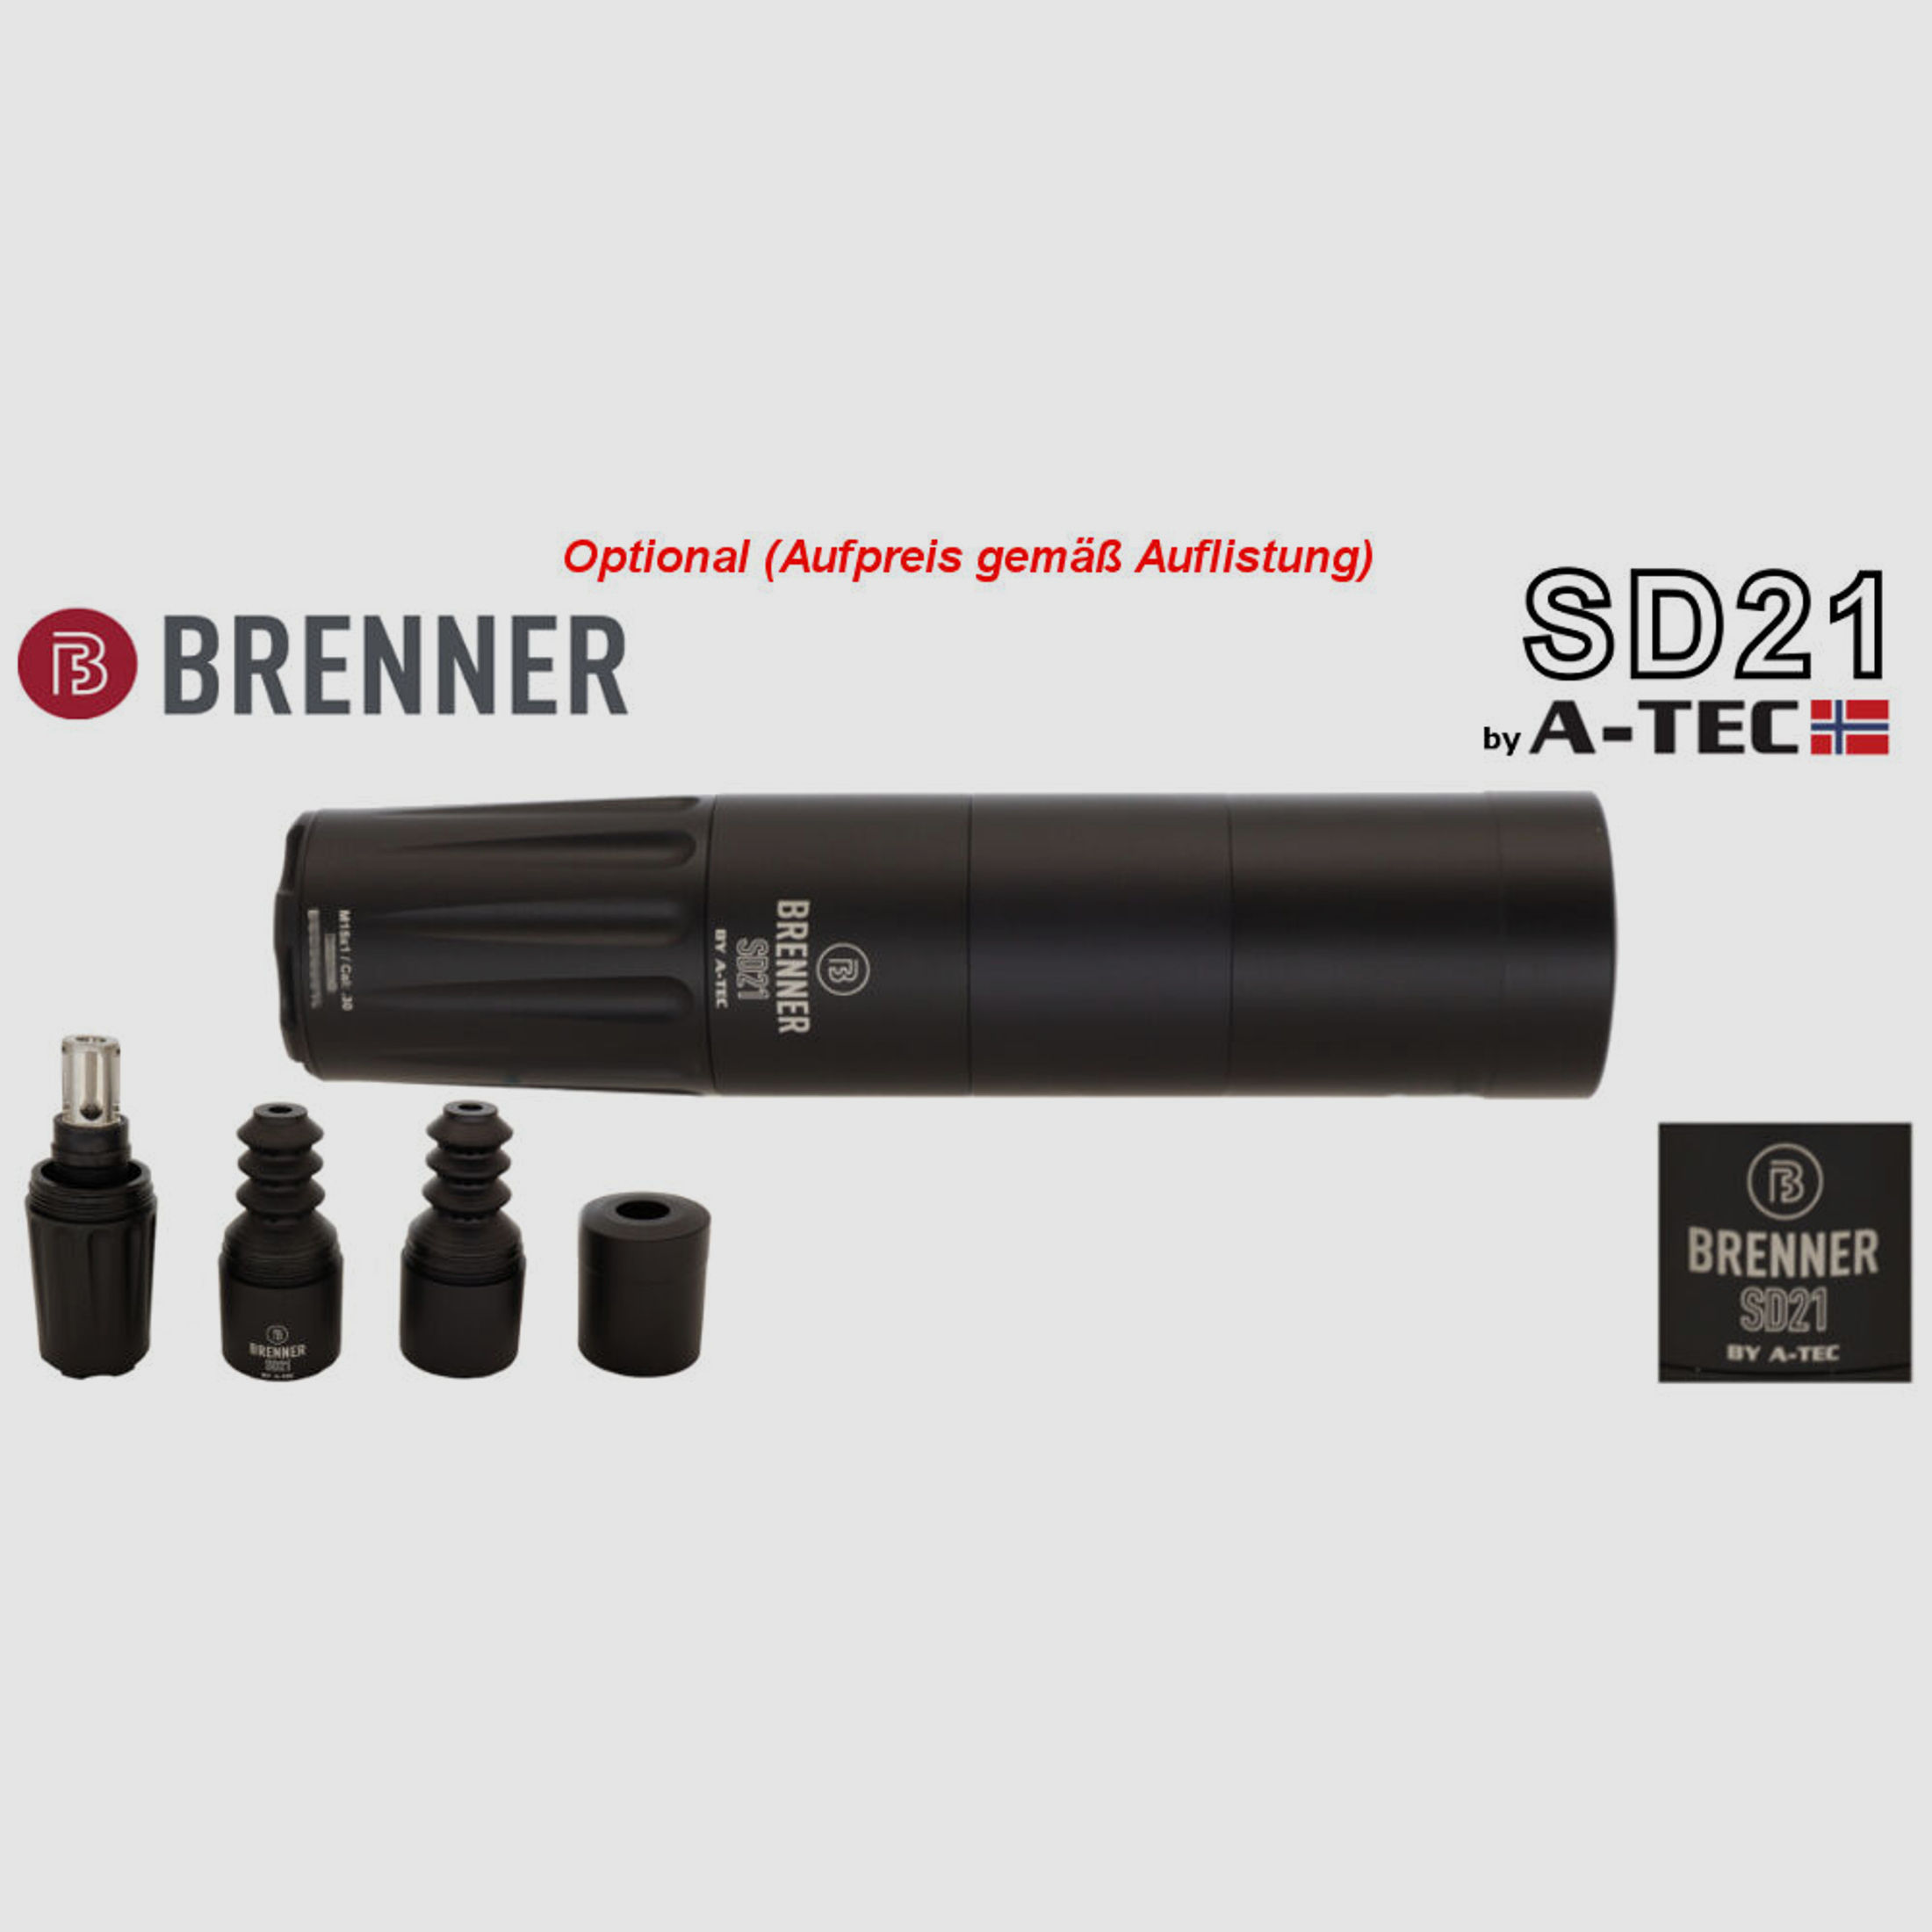 Bergara	 B14 B&H Prohunter LINKS Lochschaft inkl. Zeiss 3-12x56 fertig montiert / Optional: Brenner Schalldämpfer